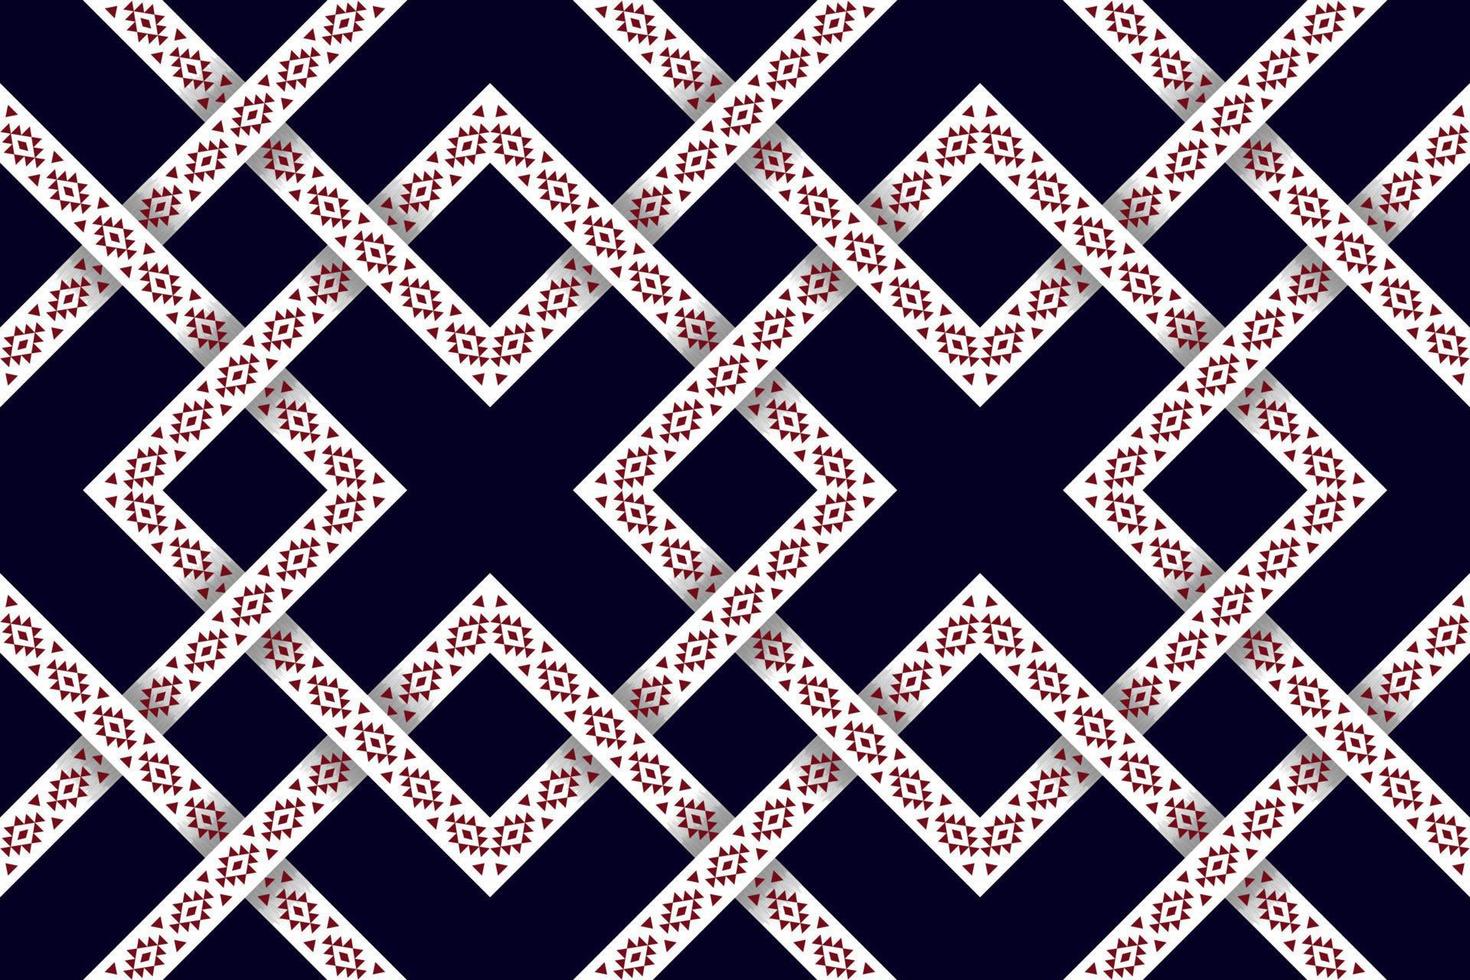 ikat abstracto geométrico étnico textil diseño de patrones sin fisuras. alfombra de tela azteca adornos de mandala decoraciones textiles papel tapiz. vector de bordado tradicional textil de pavo nativo boho tribal.